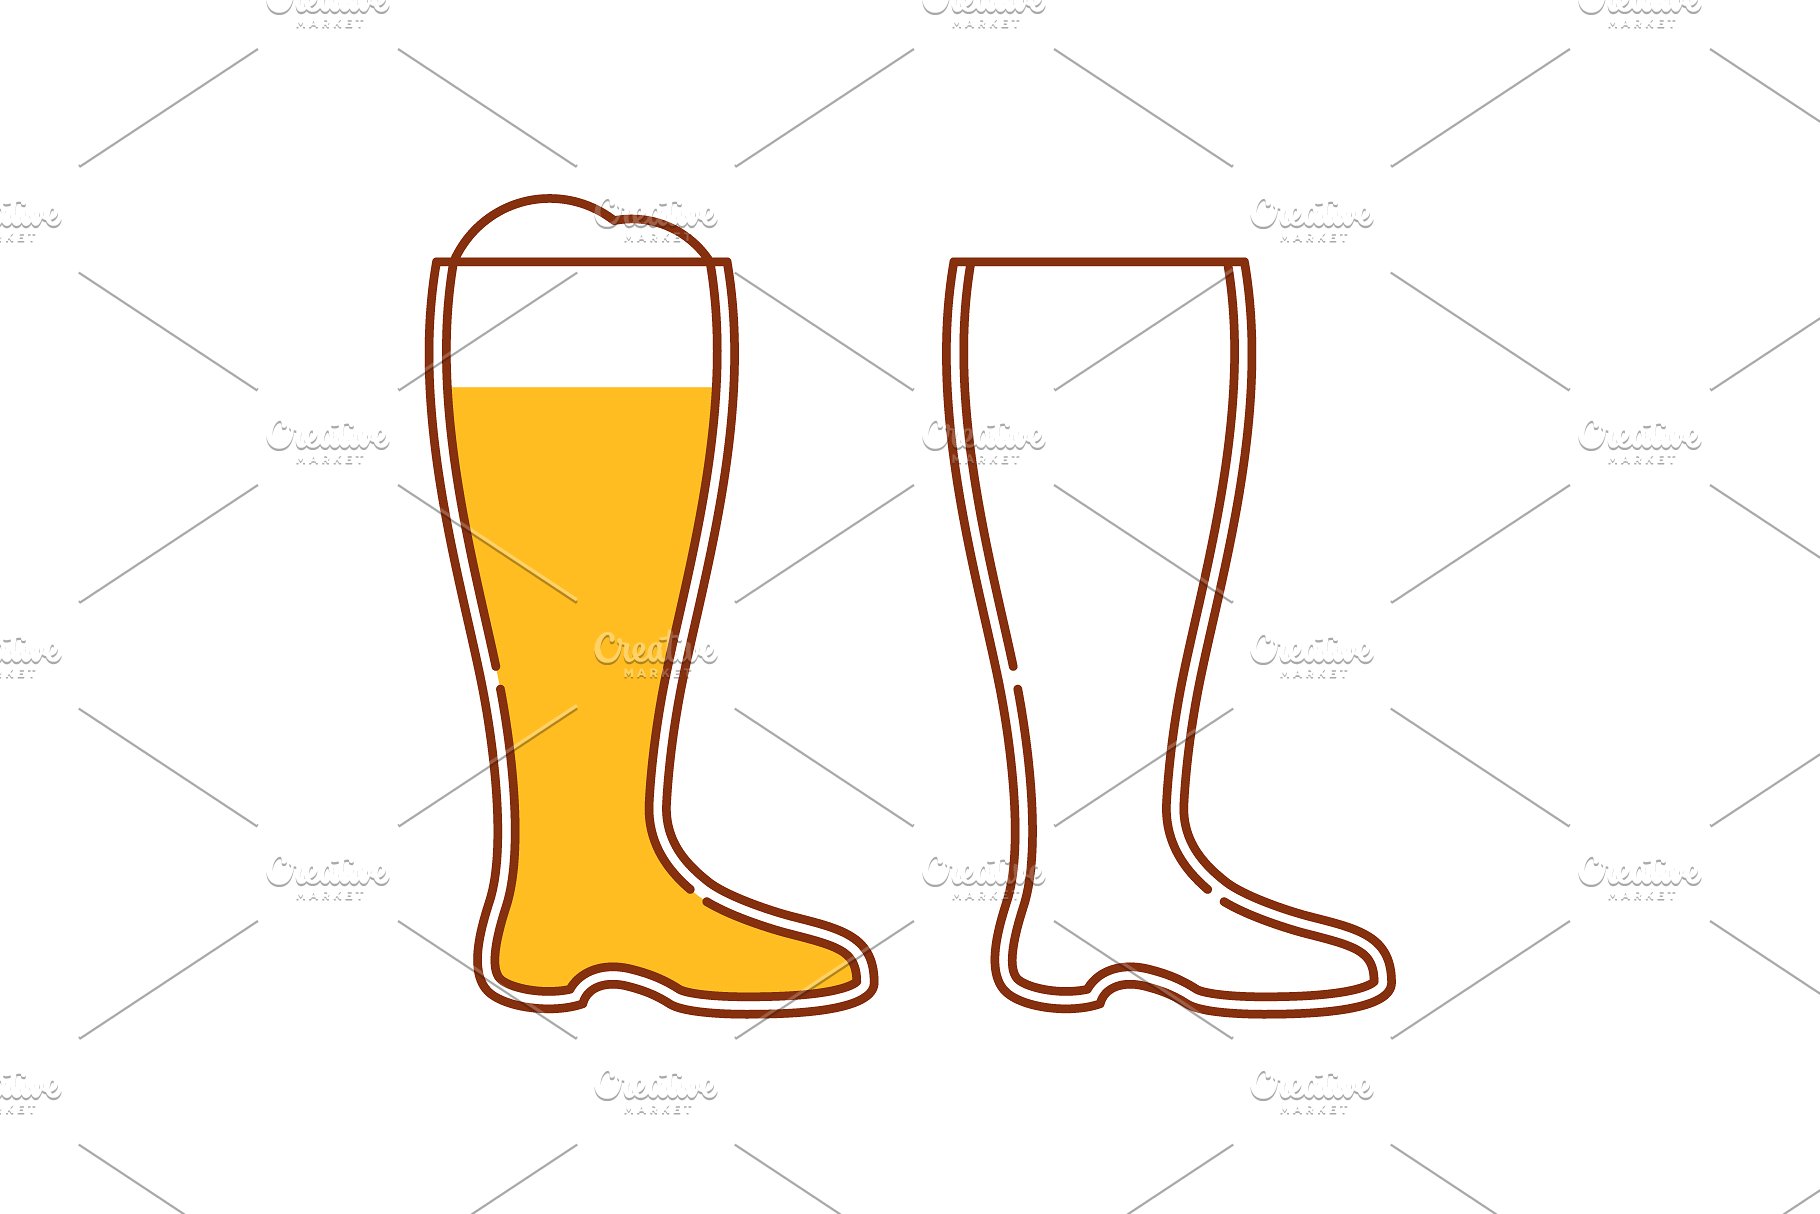 啤酒图标及标志 Beer icons and logos v